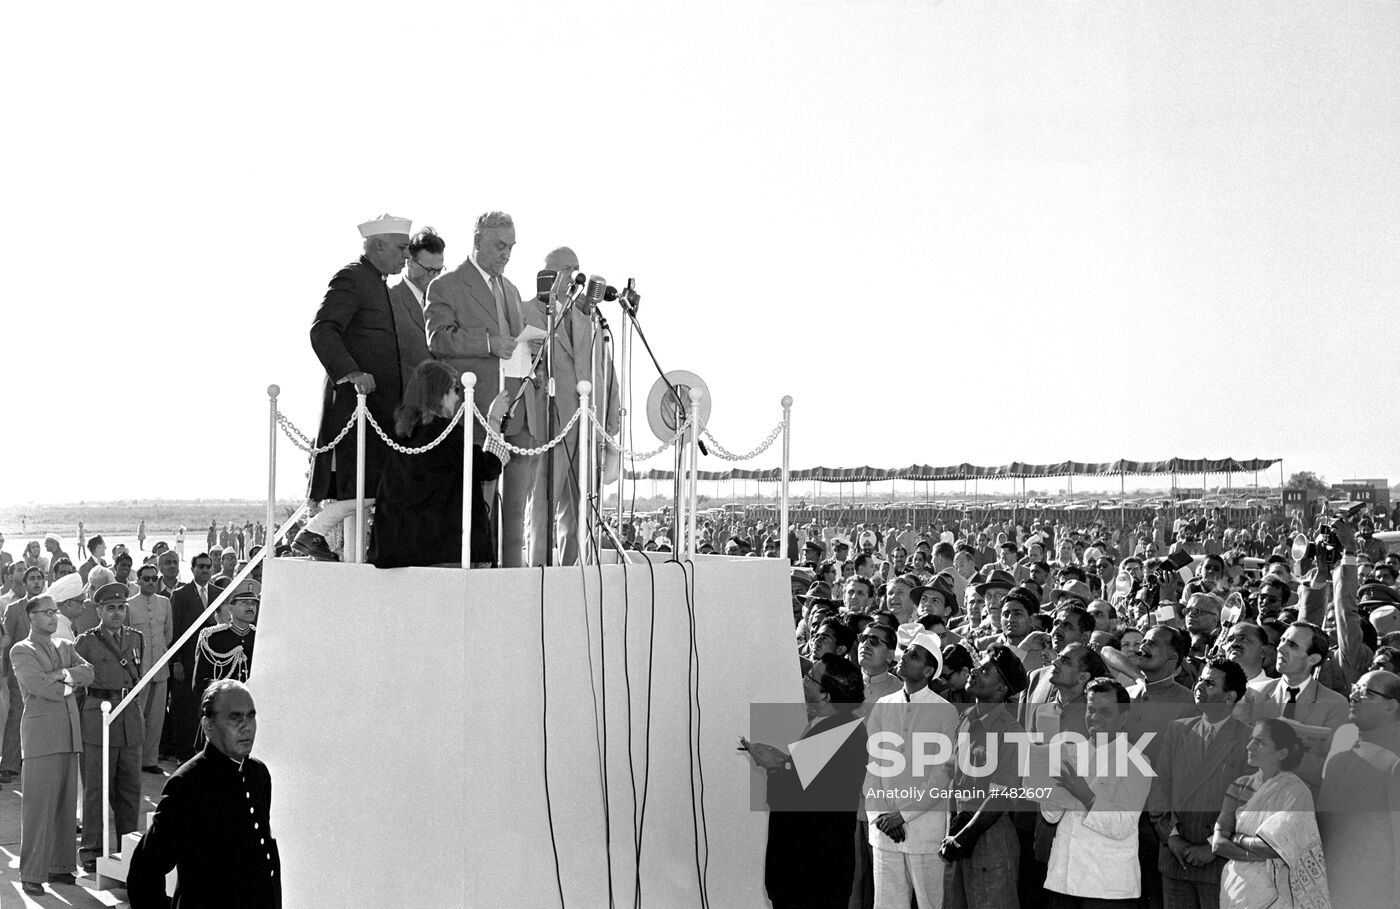 Nikita Khrushchev and Nikolai Bulganin